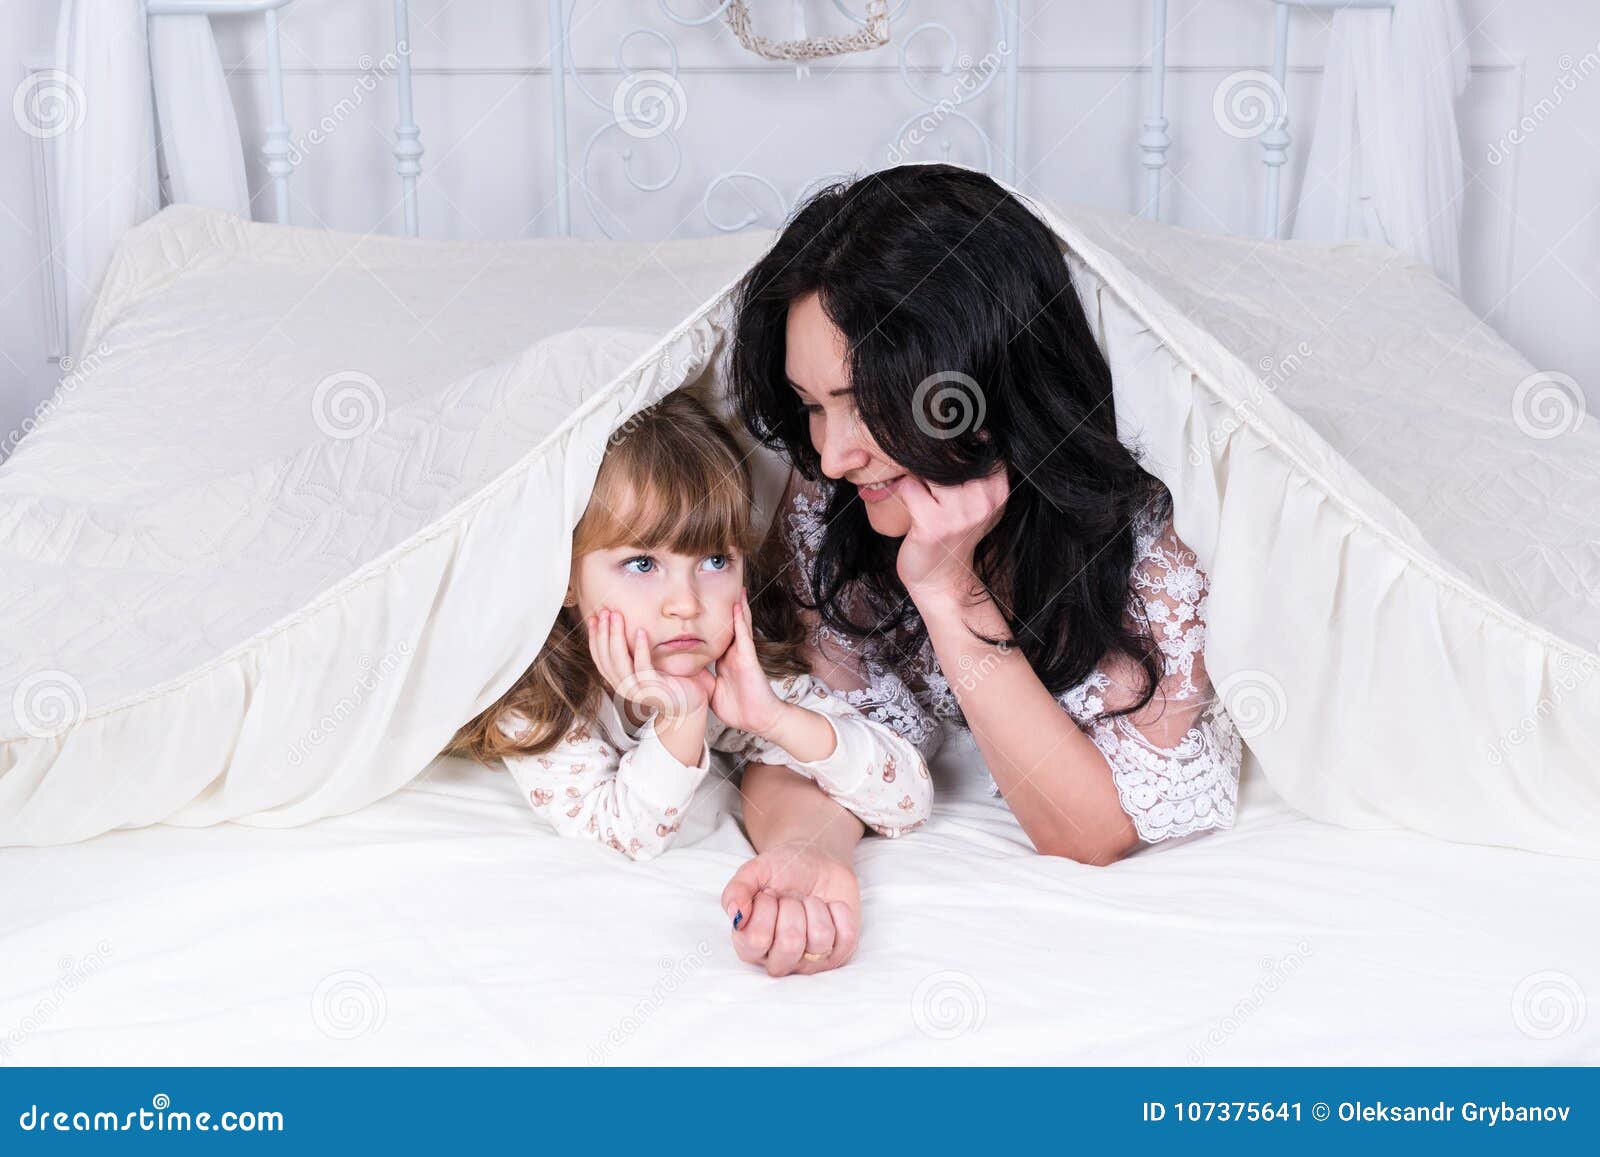 Брат мама одеяло. Мама и дочка под пледом. Дочка и мама под одеялом. Дочка и мама в постели под одеялом. Мама с дочкой под лоскутным одеялом.